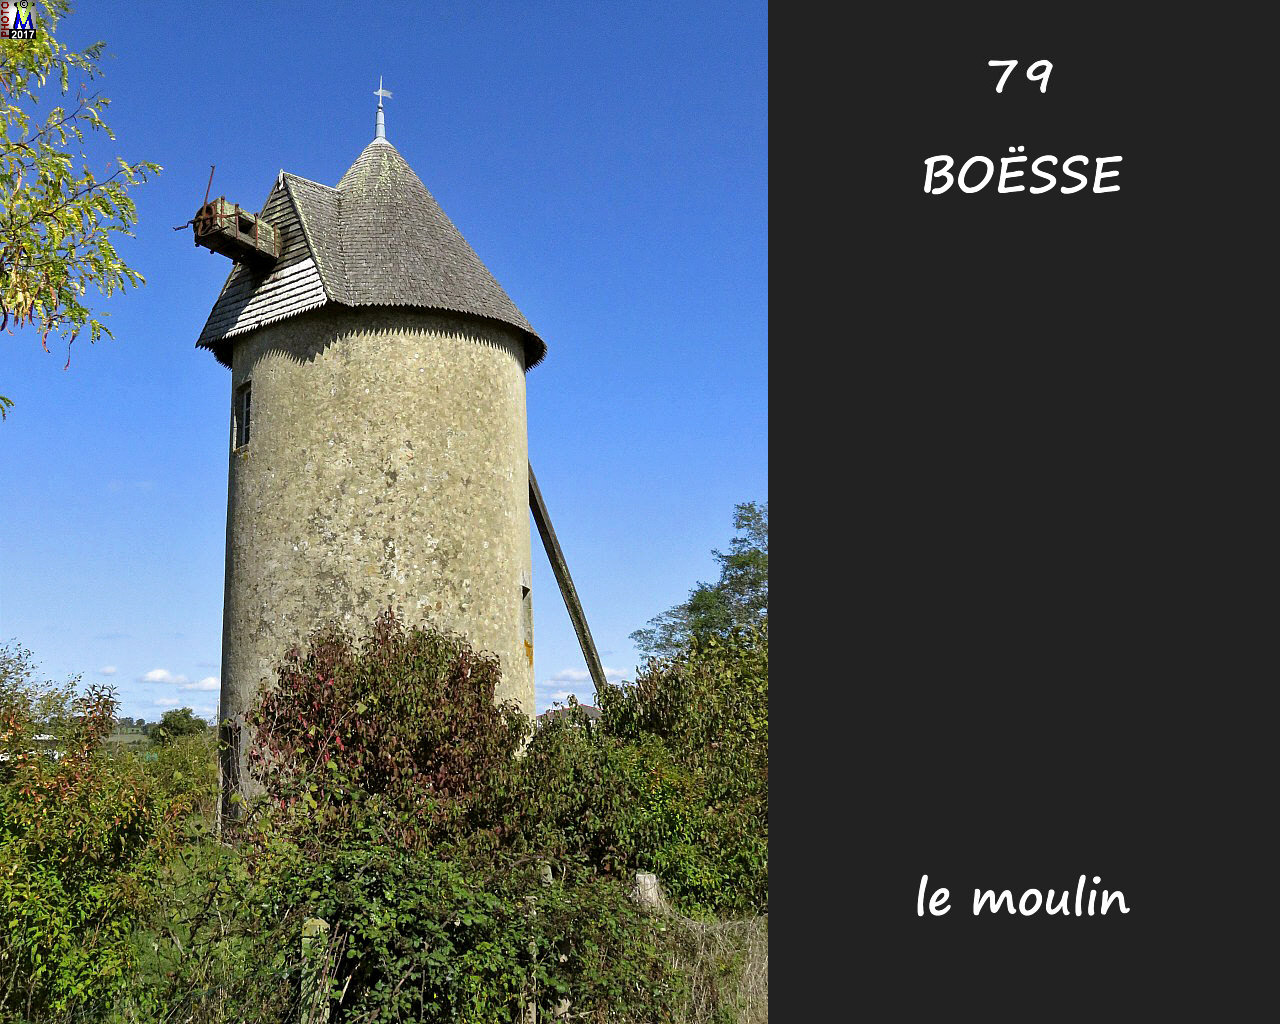 79BOESSE_moulin_1002.jpg